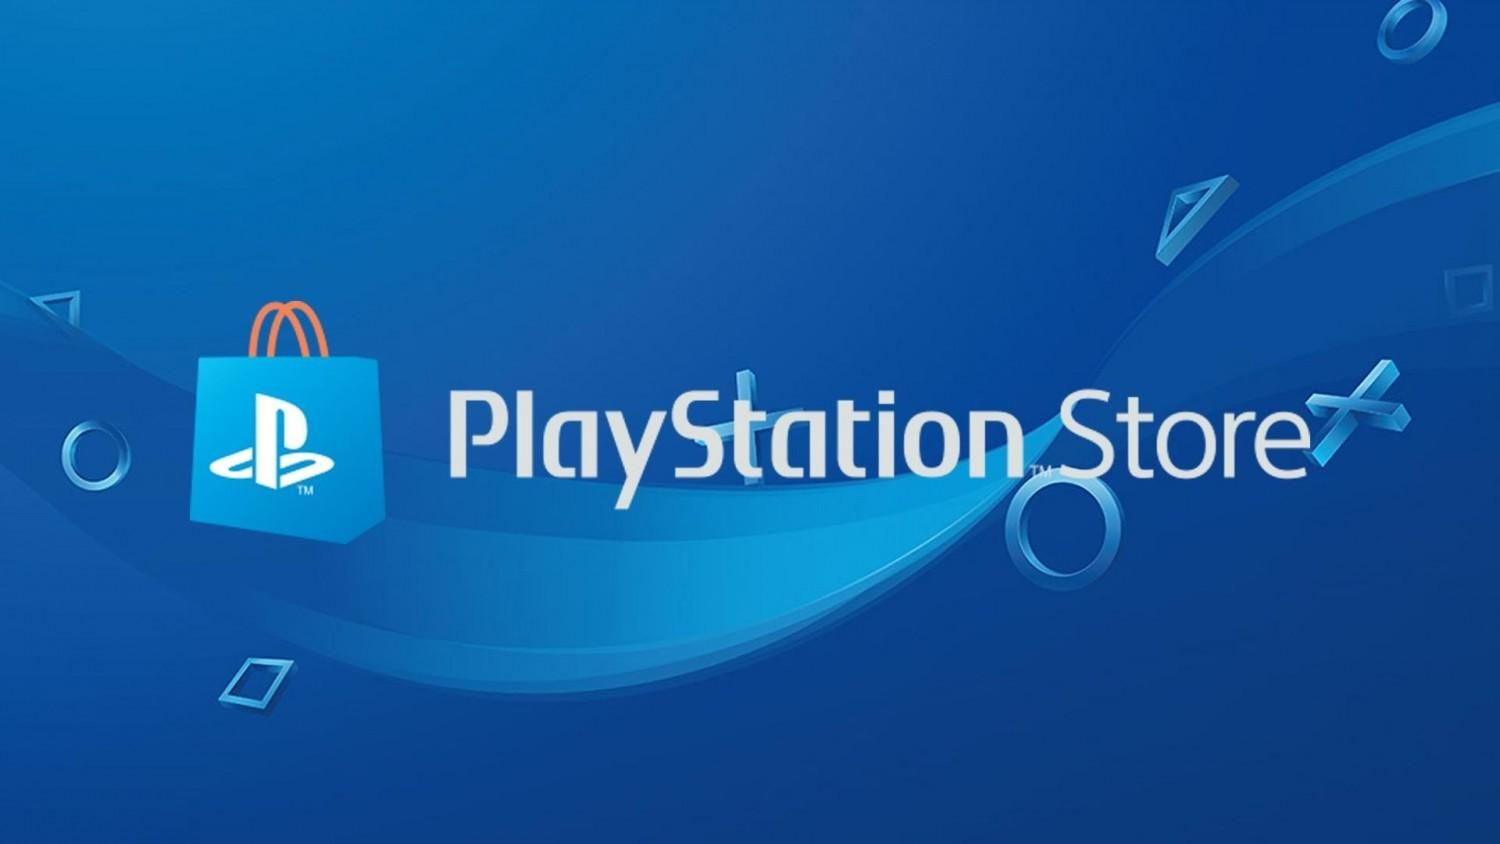 Розпродаж у PlayStation Store: список ігор зі знижками до 95%